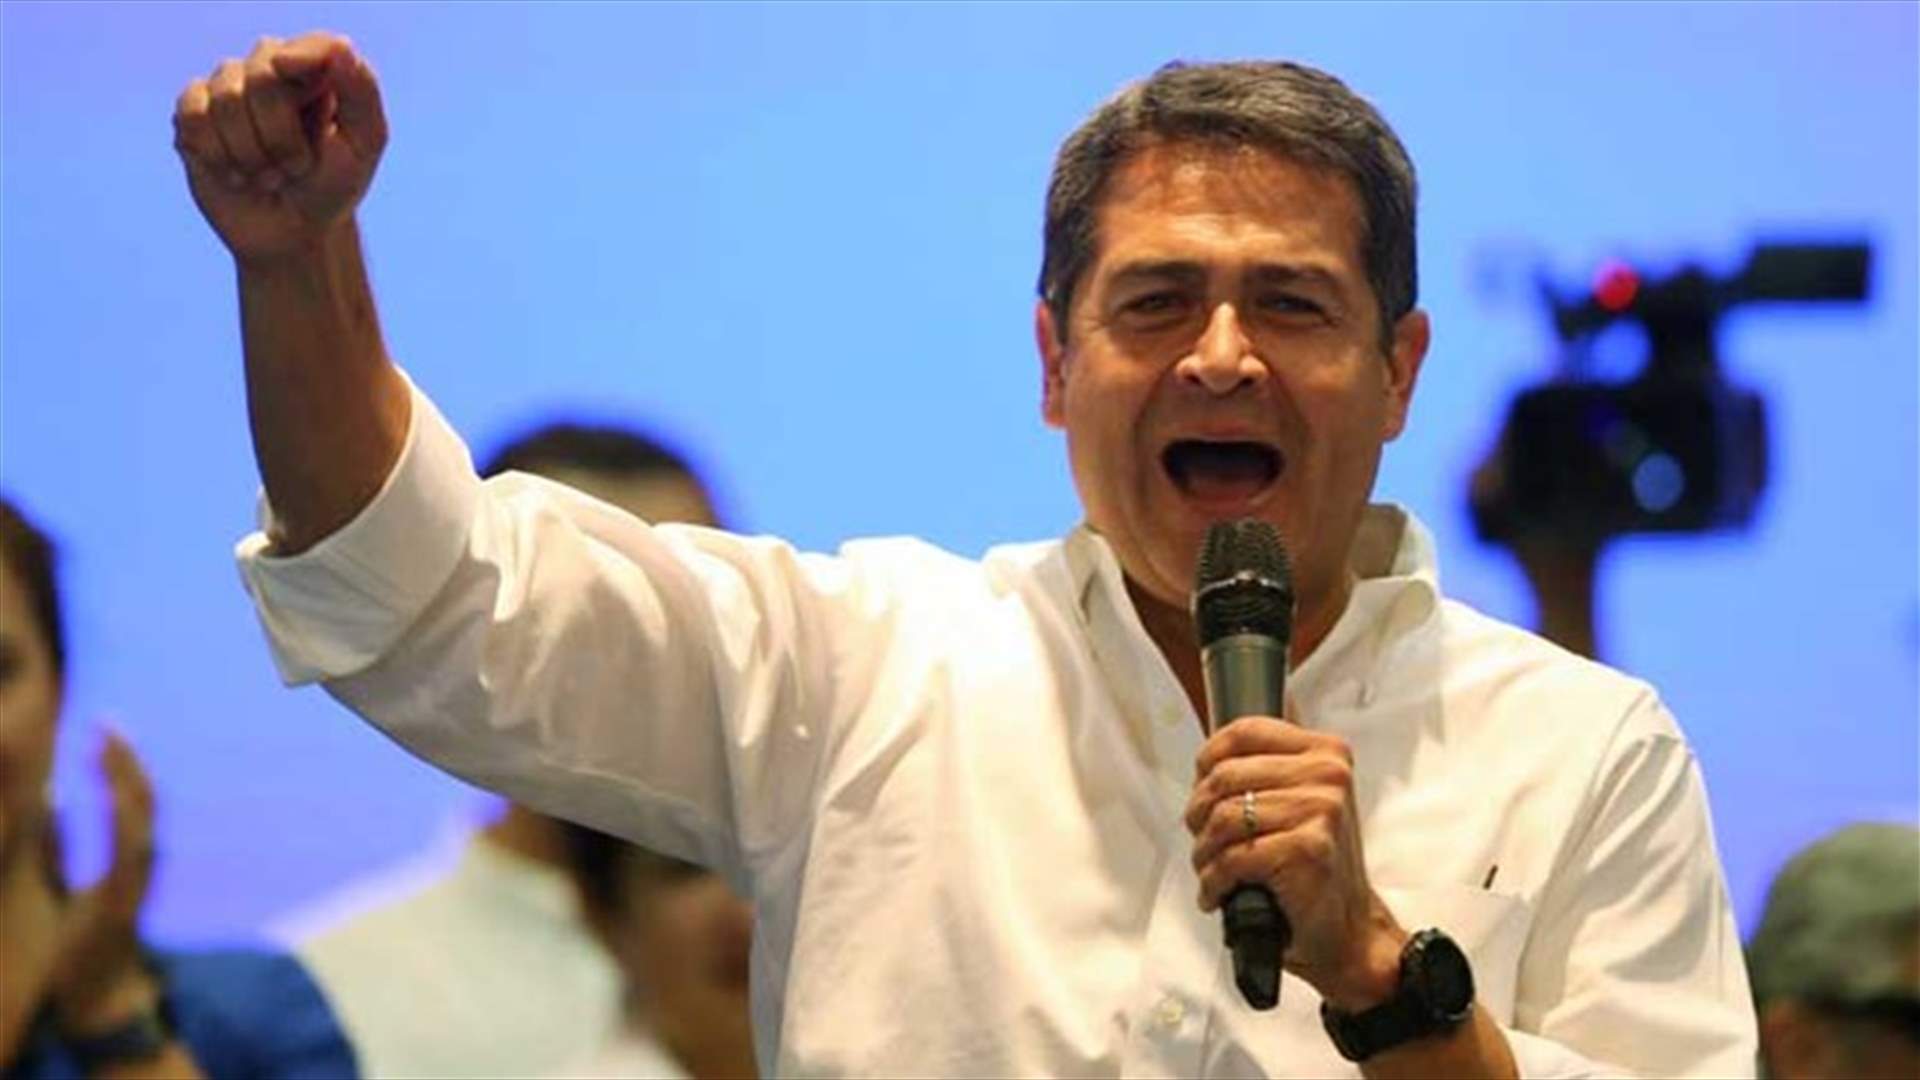 اعلان فوز رئيس هندوراس بولاية جديدة في الانتخابات الرئاسية